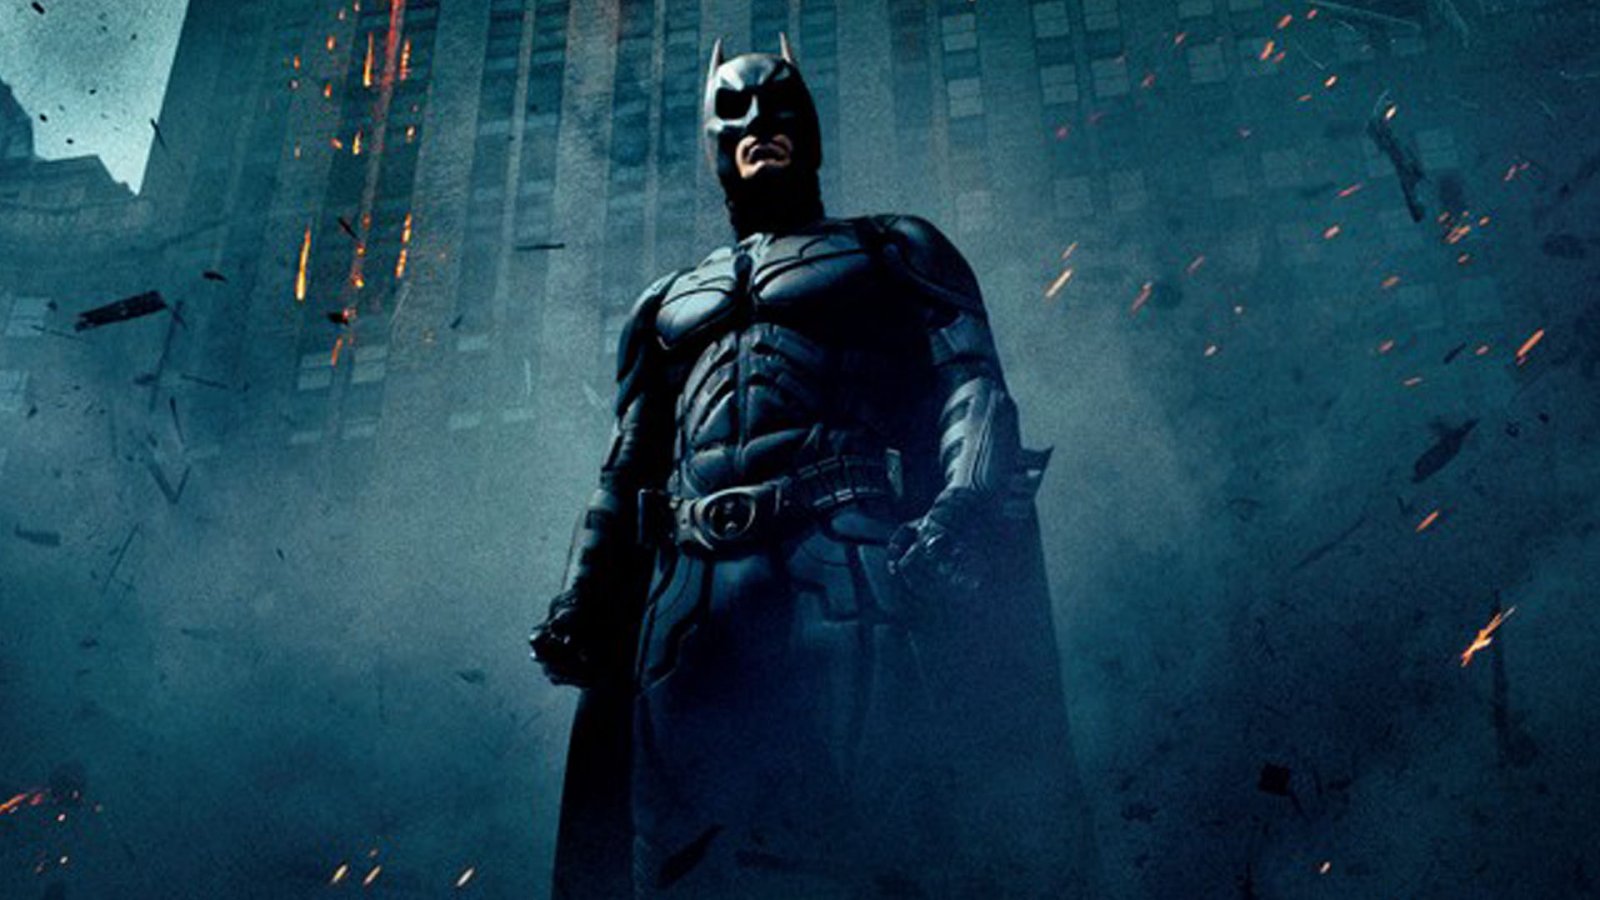 Il cavaliere oscuro:  un sondaggio di oltre 120 critici lo ha eletto miglior film di Christopher Nolan